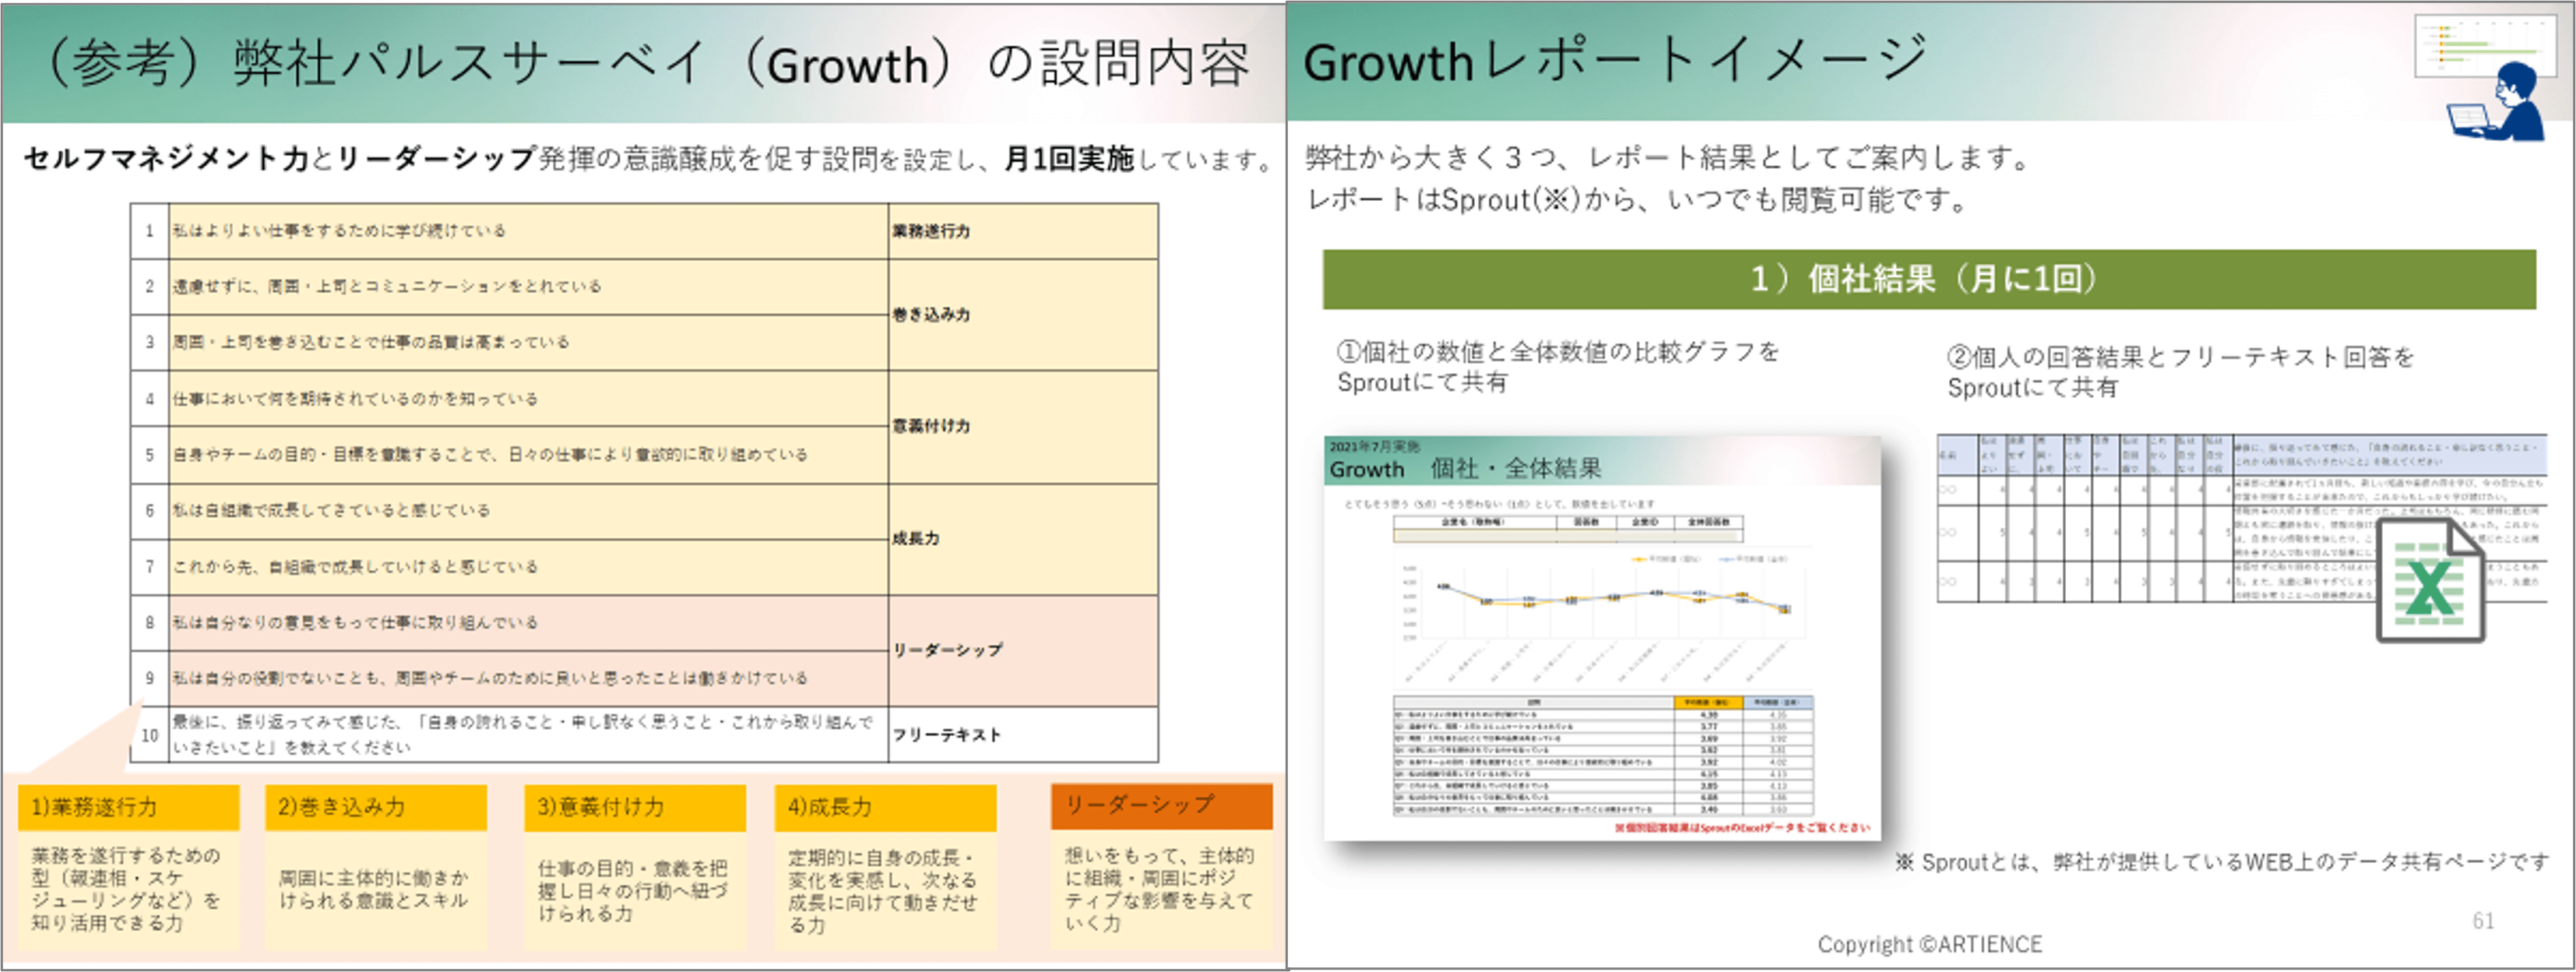 Growthの設問内容とレポートイメージ